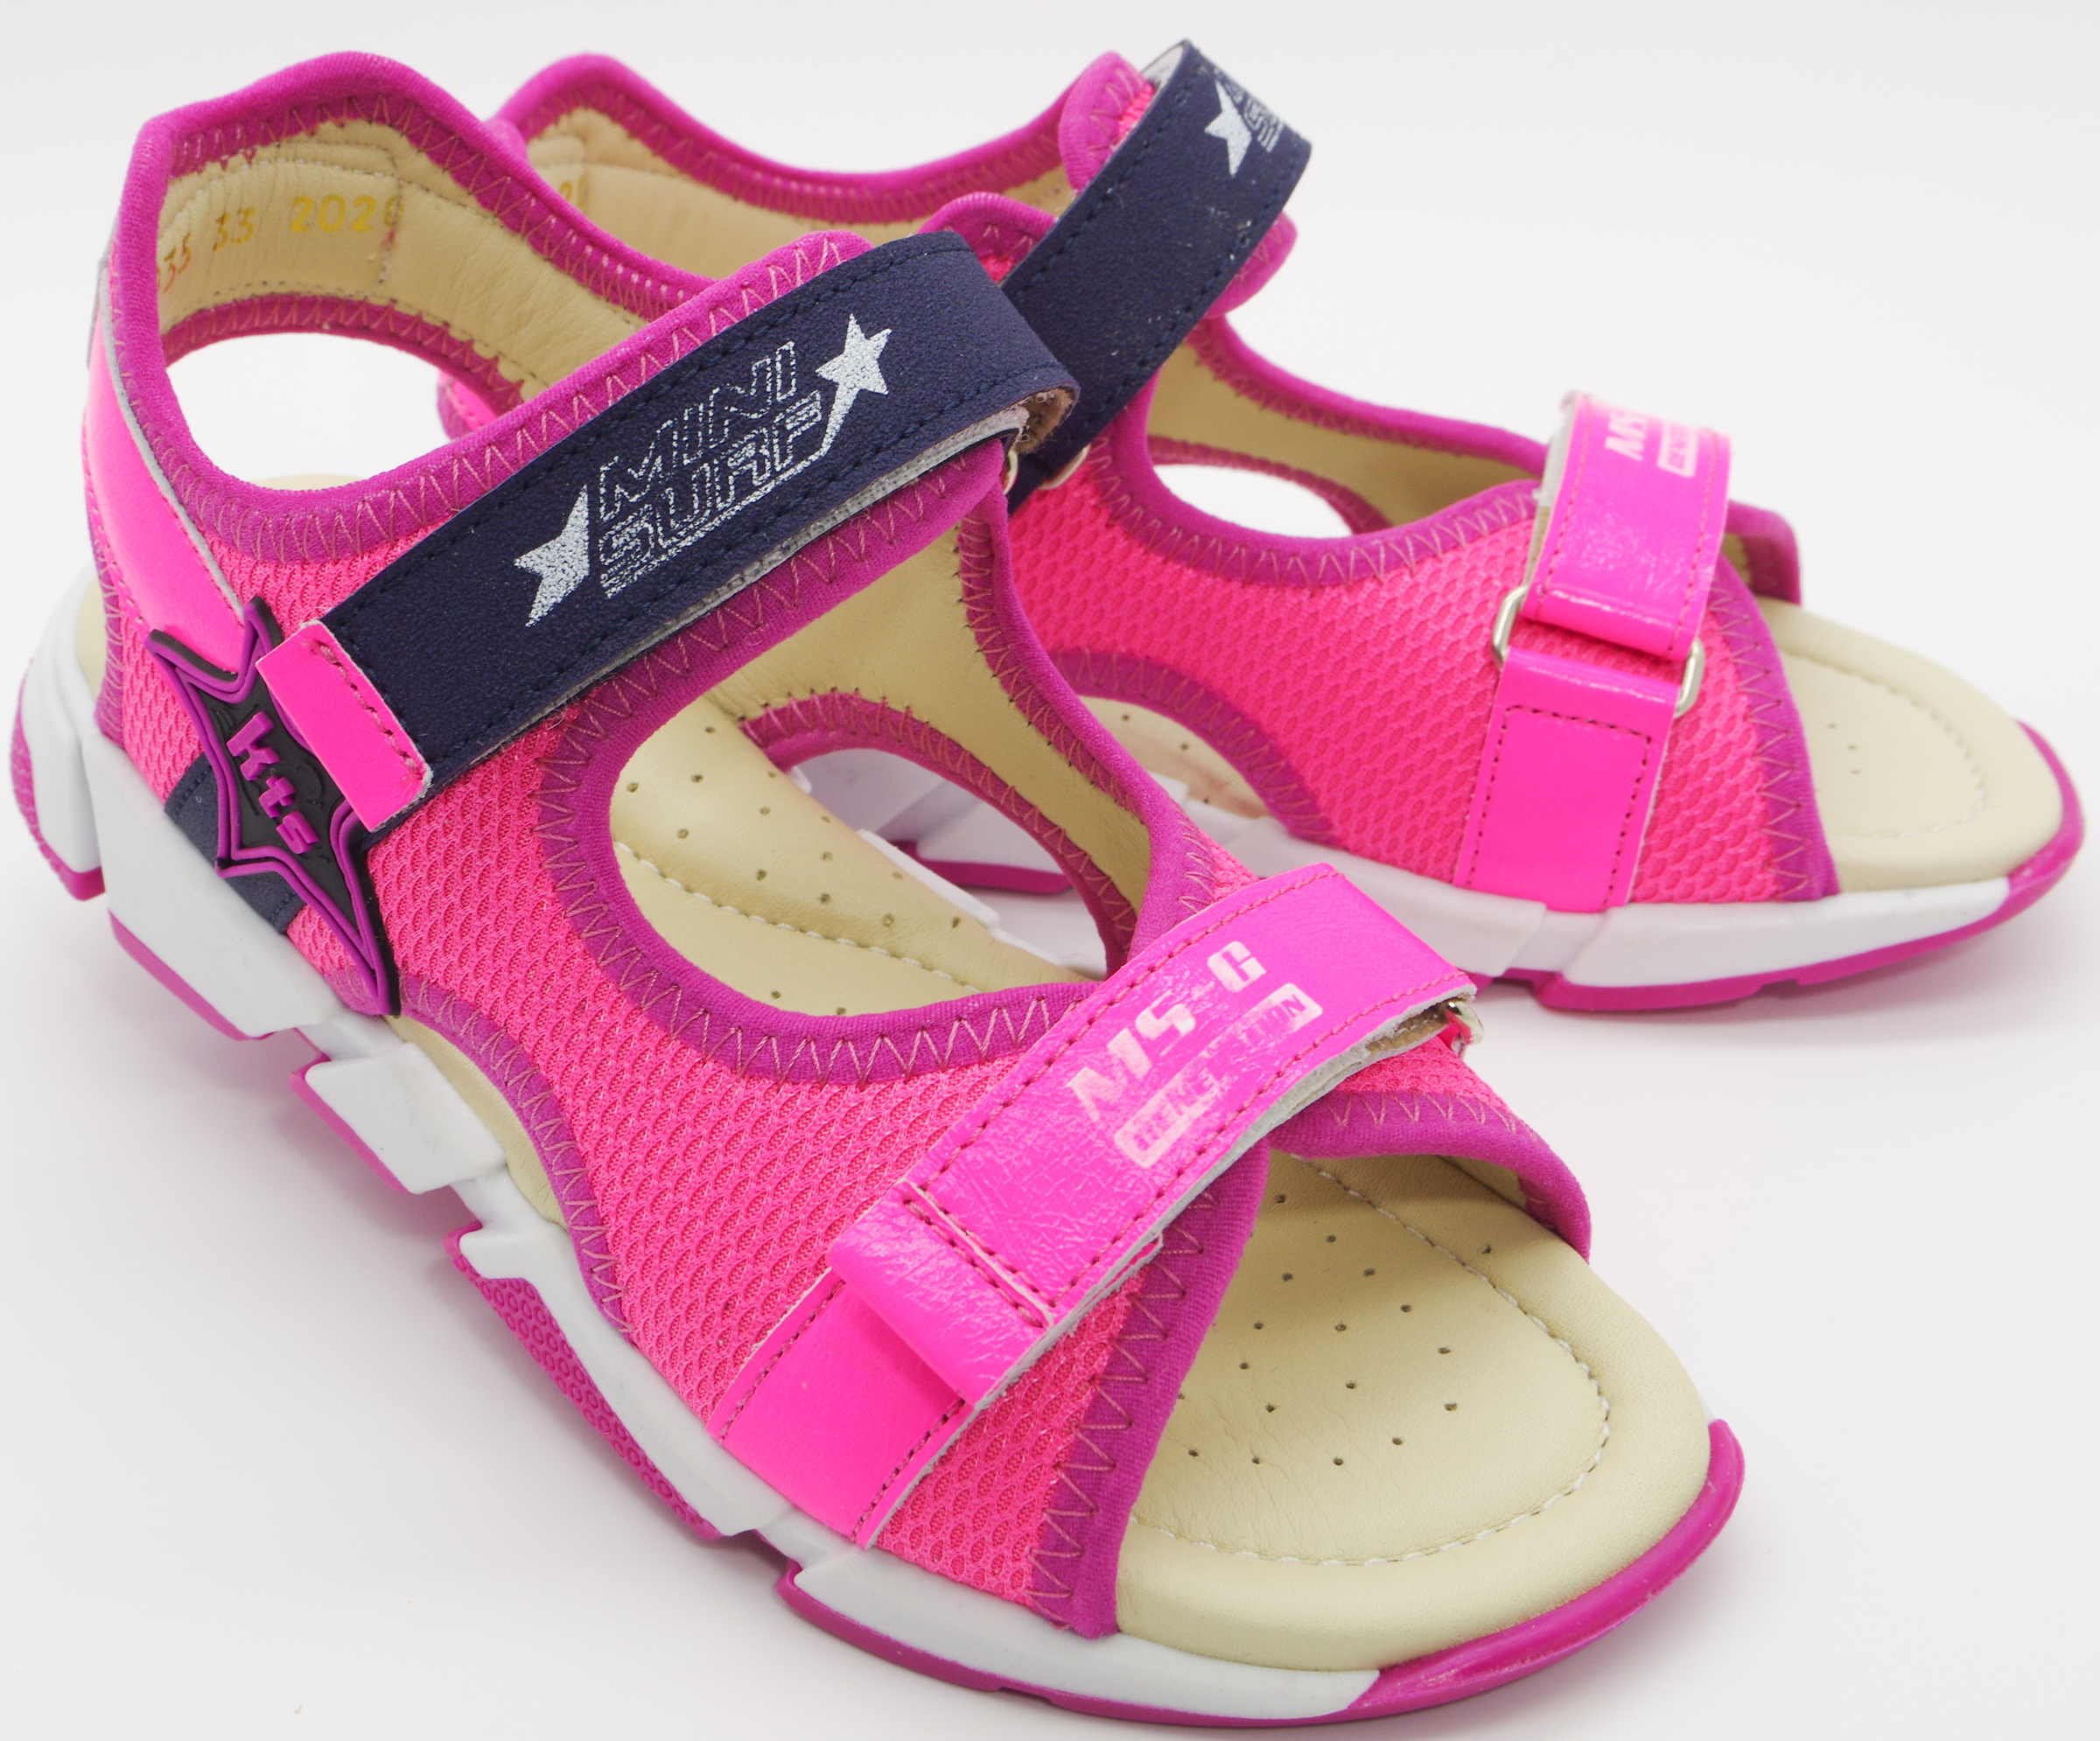 Спортивные босоножки (2098) материал Нубук, цвет Розовый  для девочки 31-36 размеры – Sole Kids. Фото 1